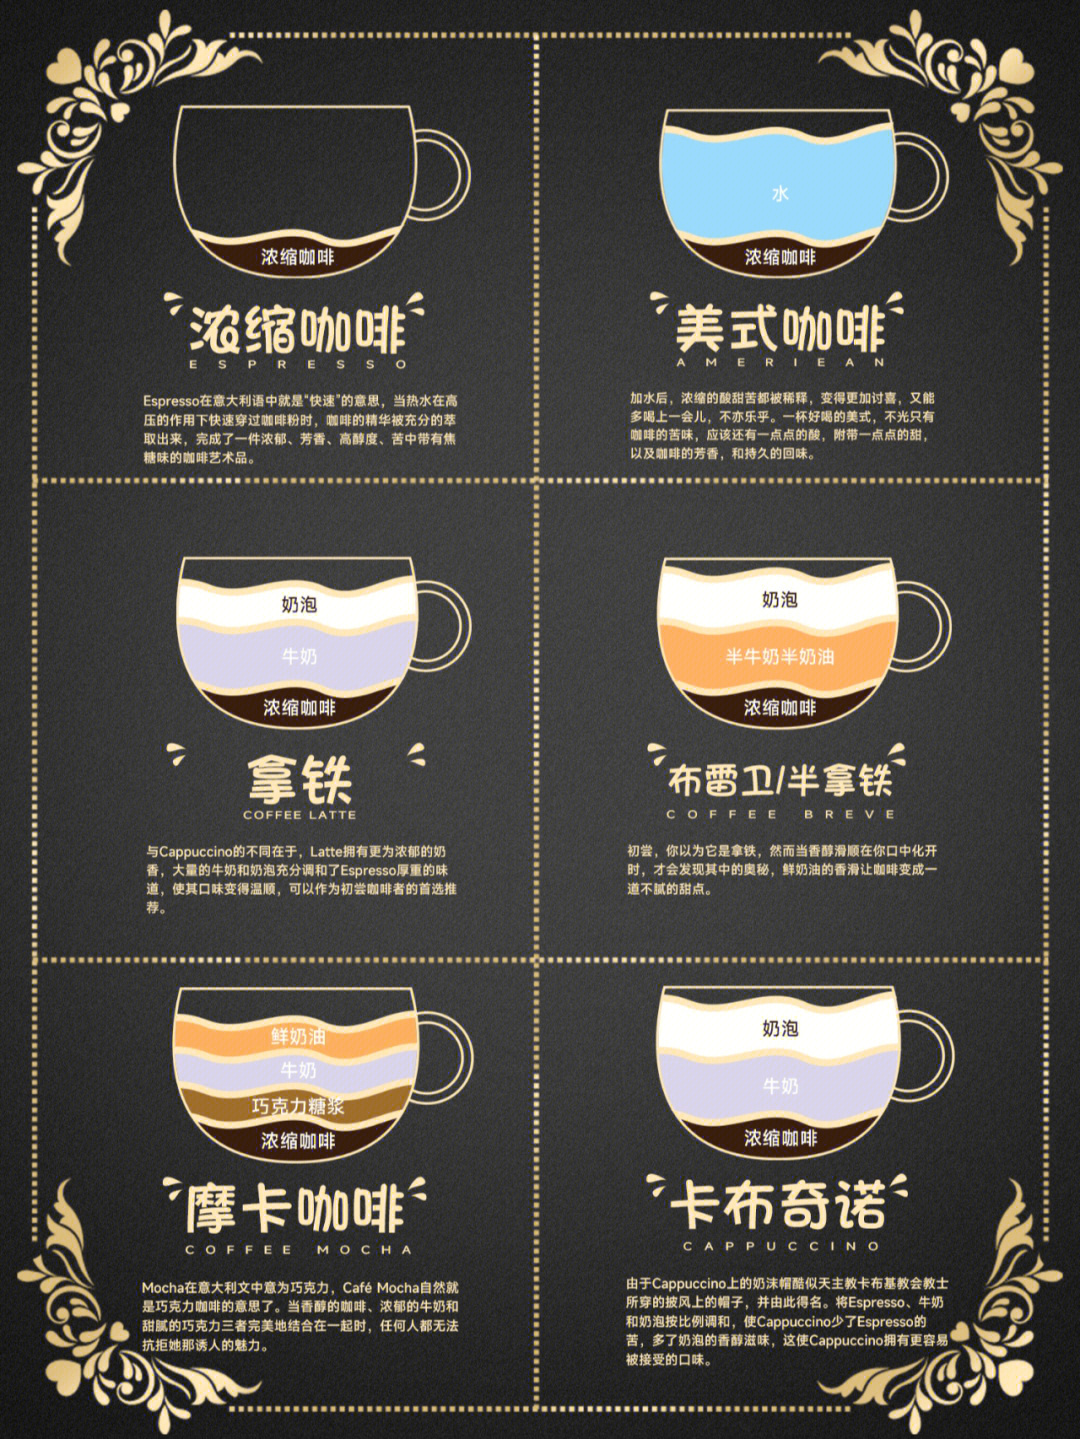 咖啡品种及口味图片